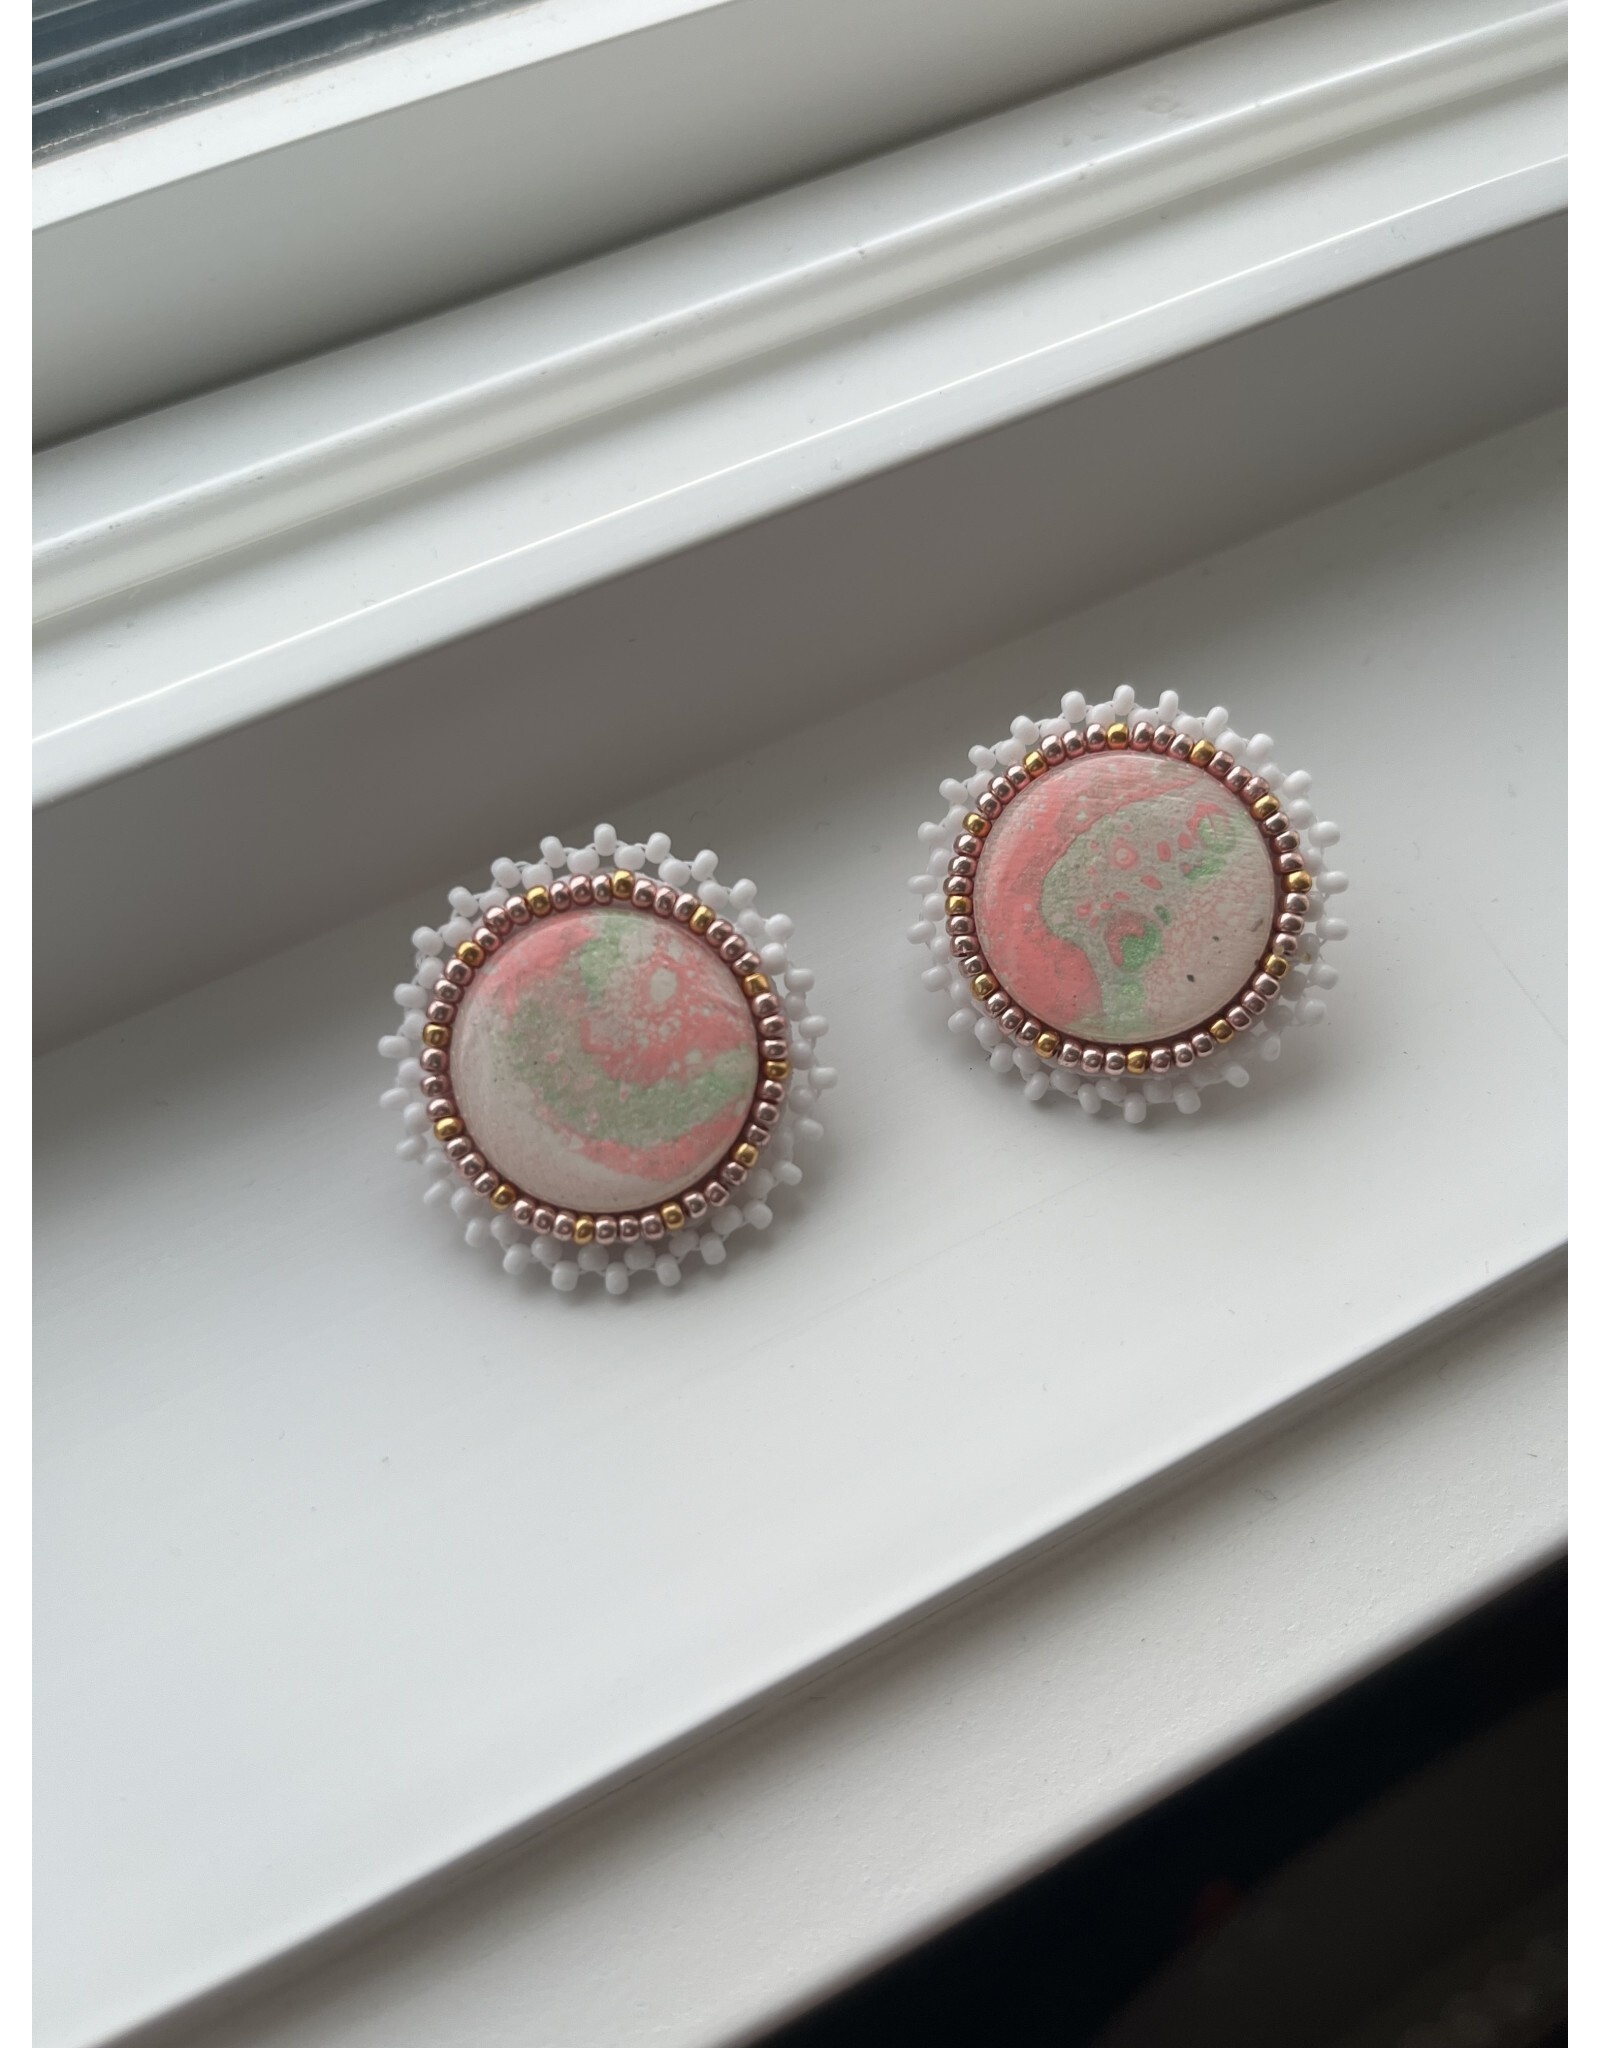 Indigediva Jewels Indigediva Jewels - Marble pastel earrings